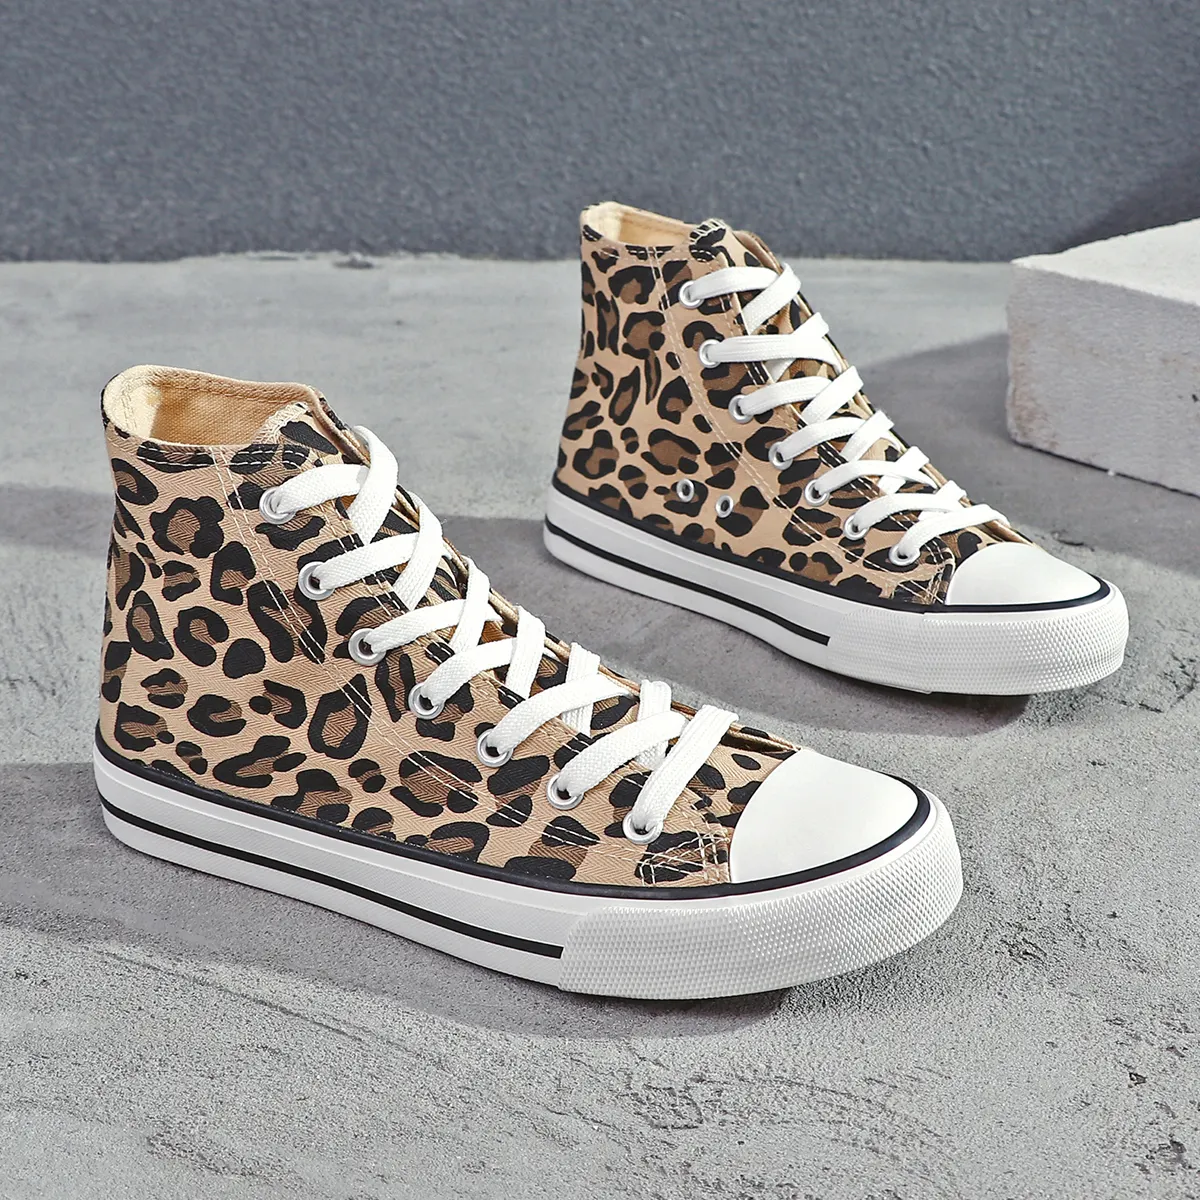 Chaussures vulcanisées pour femmes tendance en toile de mode chaussures en toile imprimées léopard personnalisées